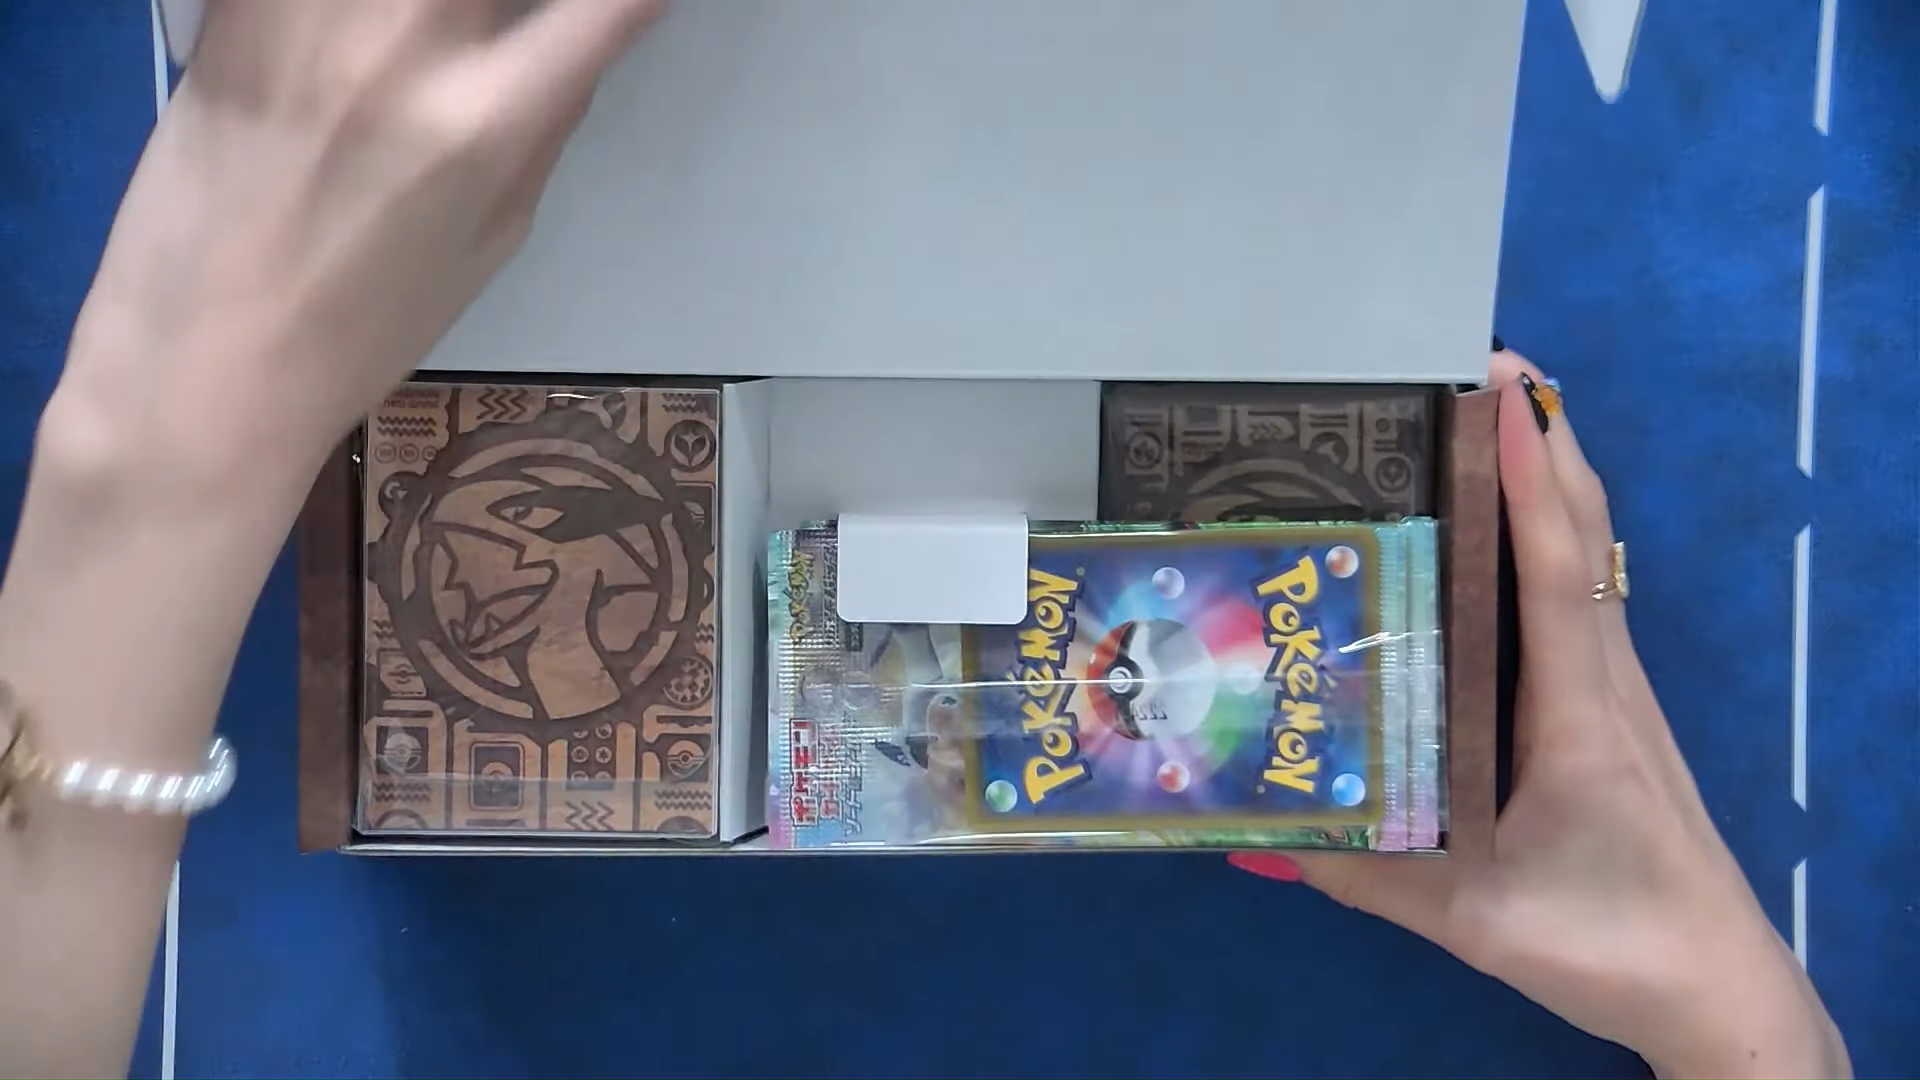 Japanese Pokemon Paradigm Trigger Mystery Box Opening/Unboxing